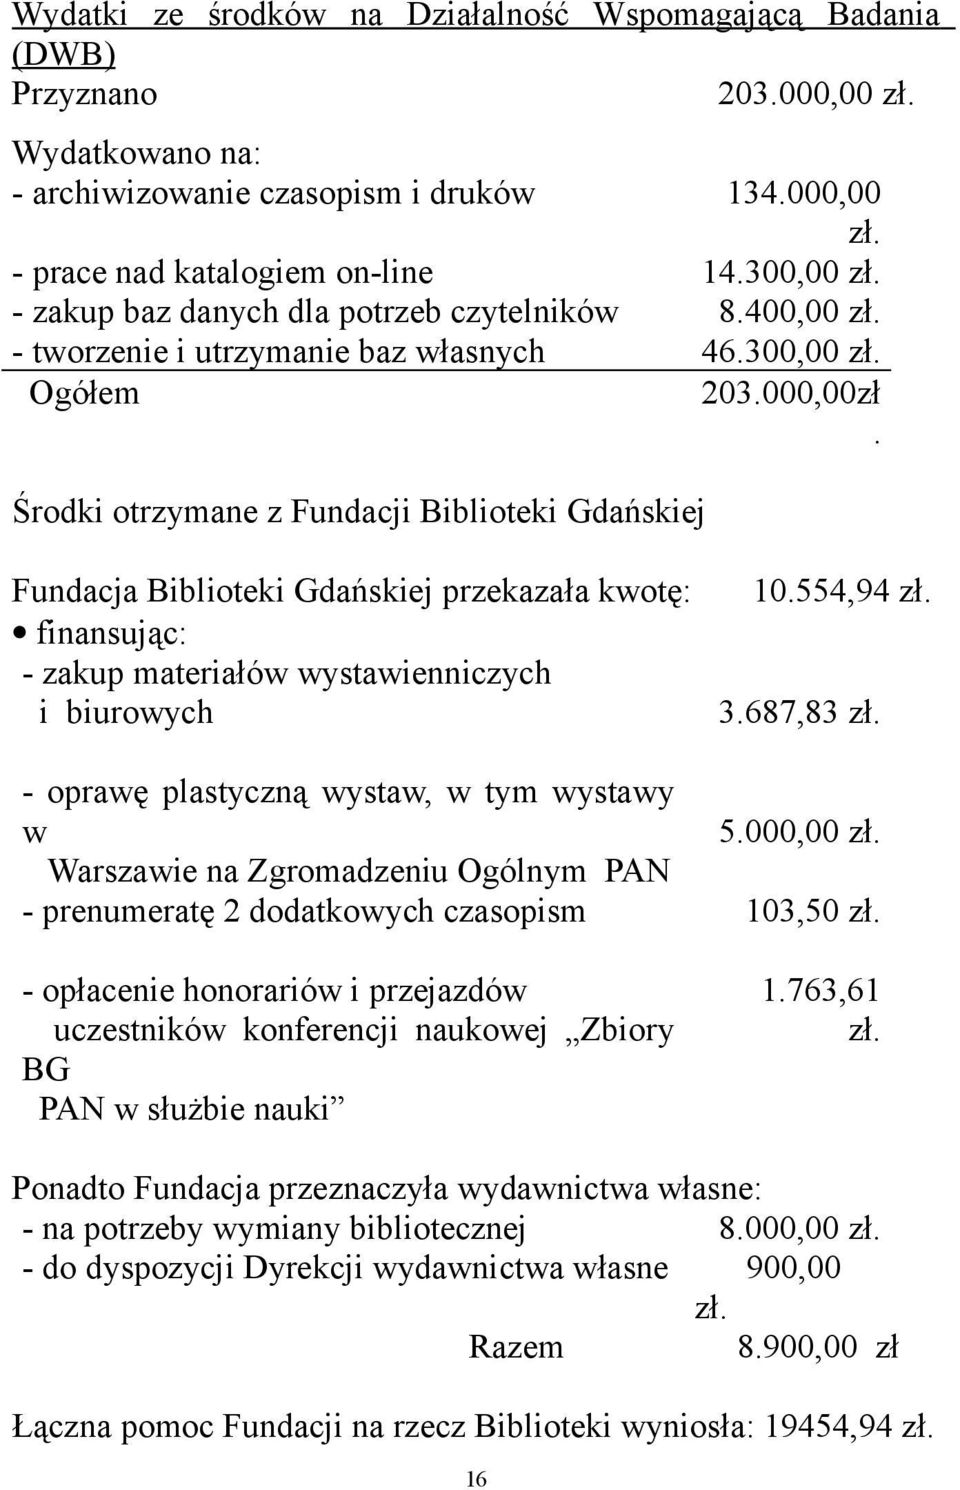 Środki otrzymane z Fundacji Biblioteki Gdańskiej Fundacja Biblioteki Gdańskiej przekazała kwotę: finansując: - zakup materiałów wystawienniczych i biurowych 10.554,94 zł. 3.687,83 zł.